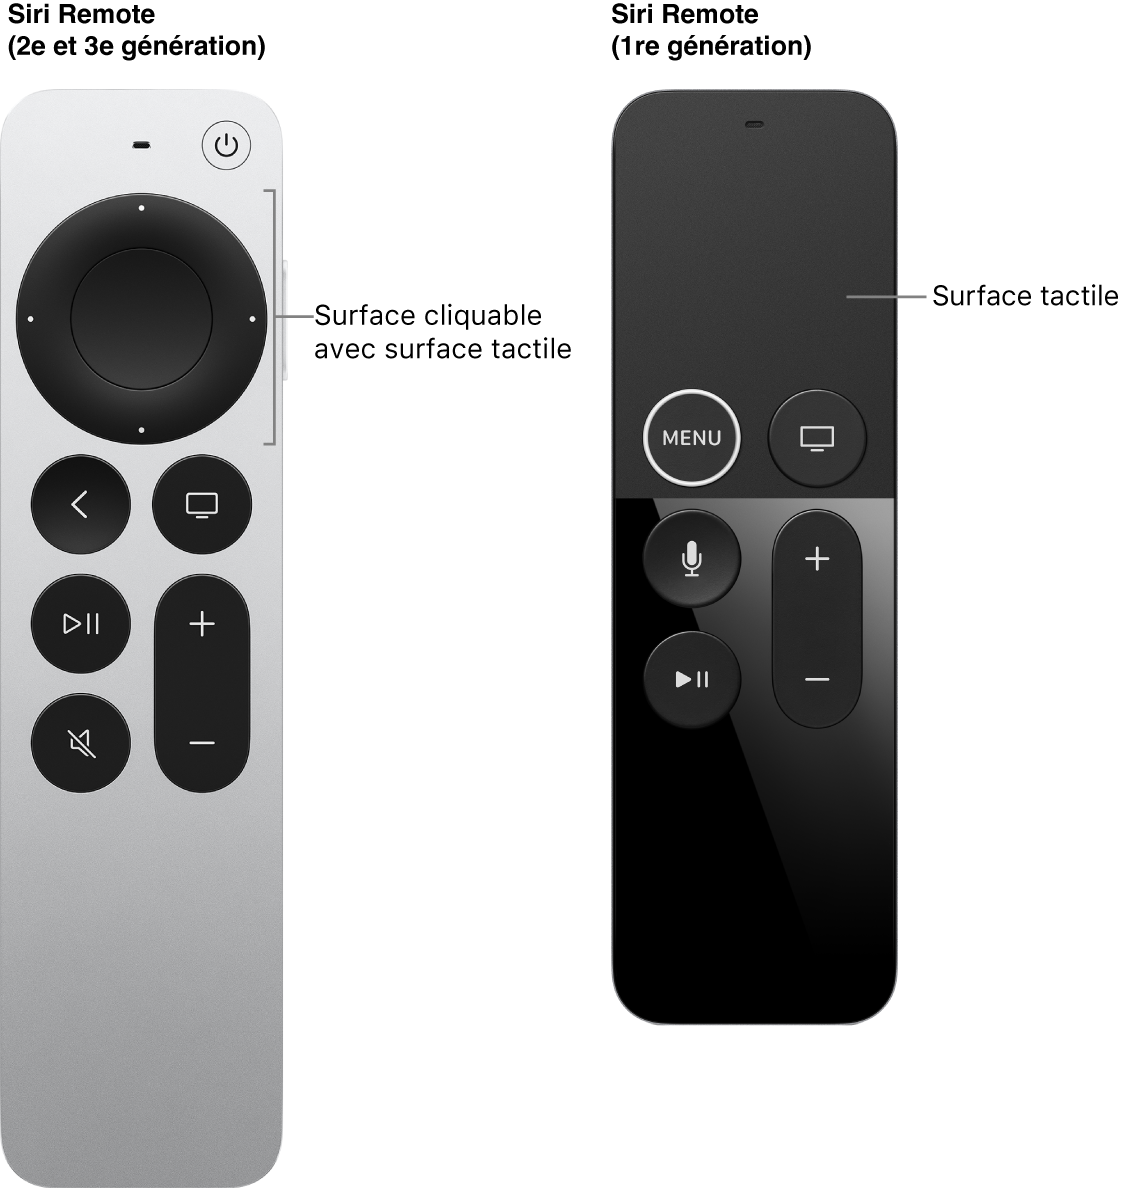 Télécommande Siri Remote (2e et 3e générations) avec surface cliquable et Siri Remote (1re génération) avec surface tactile